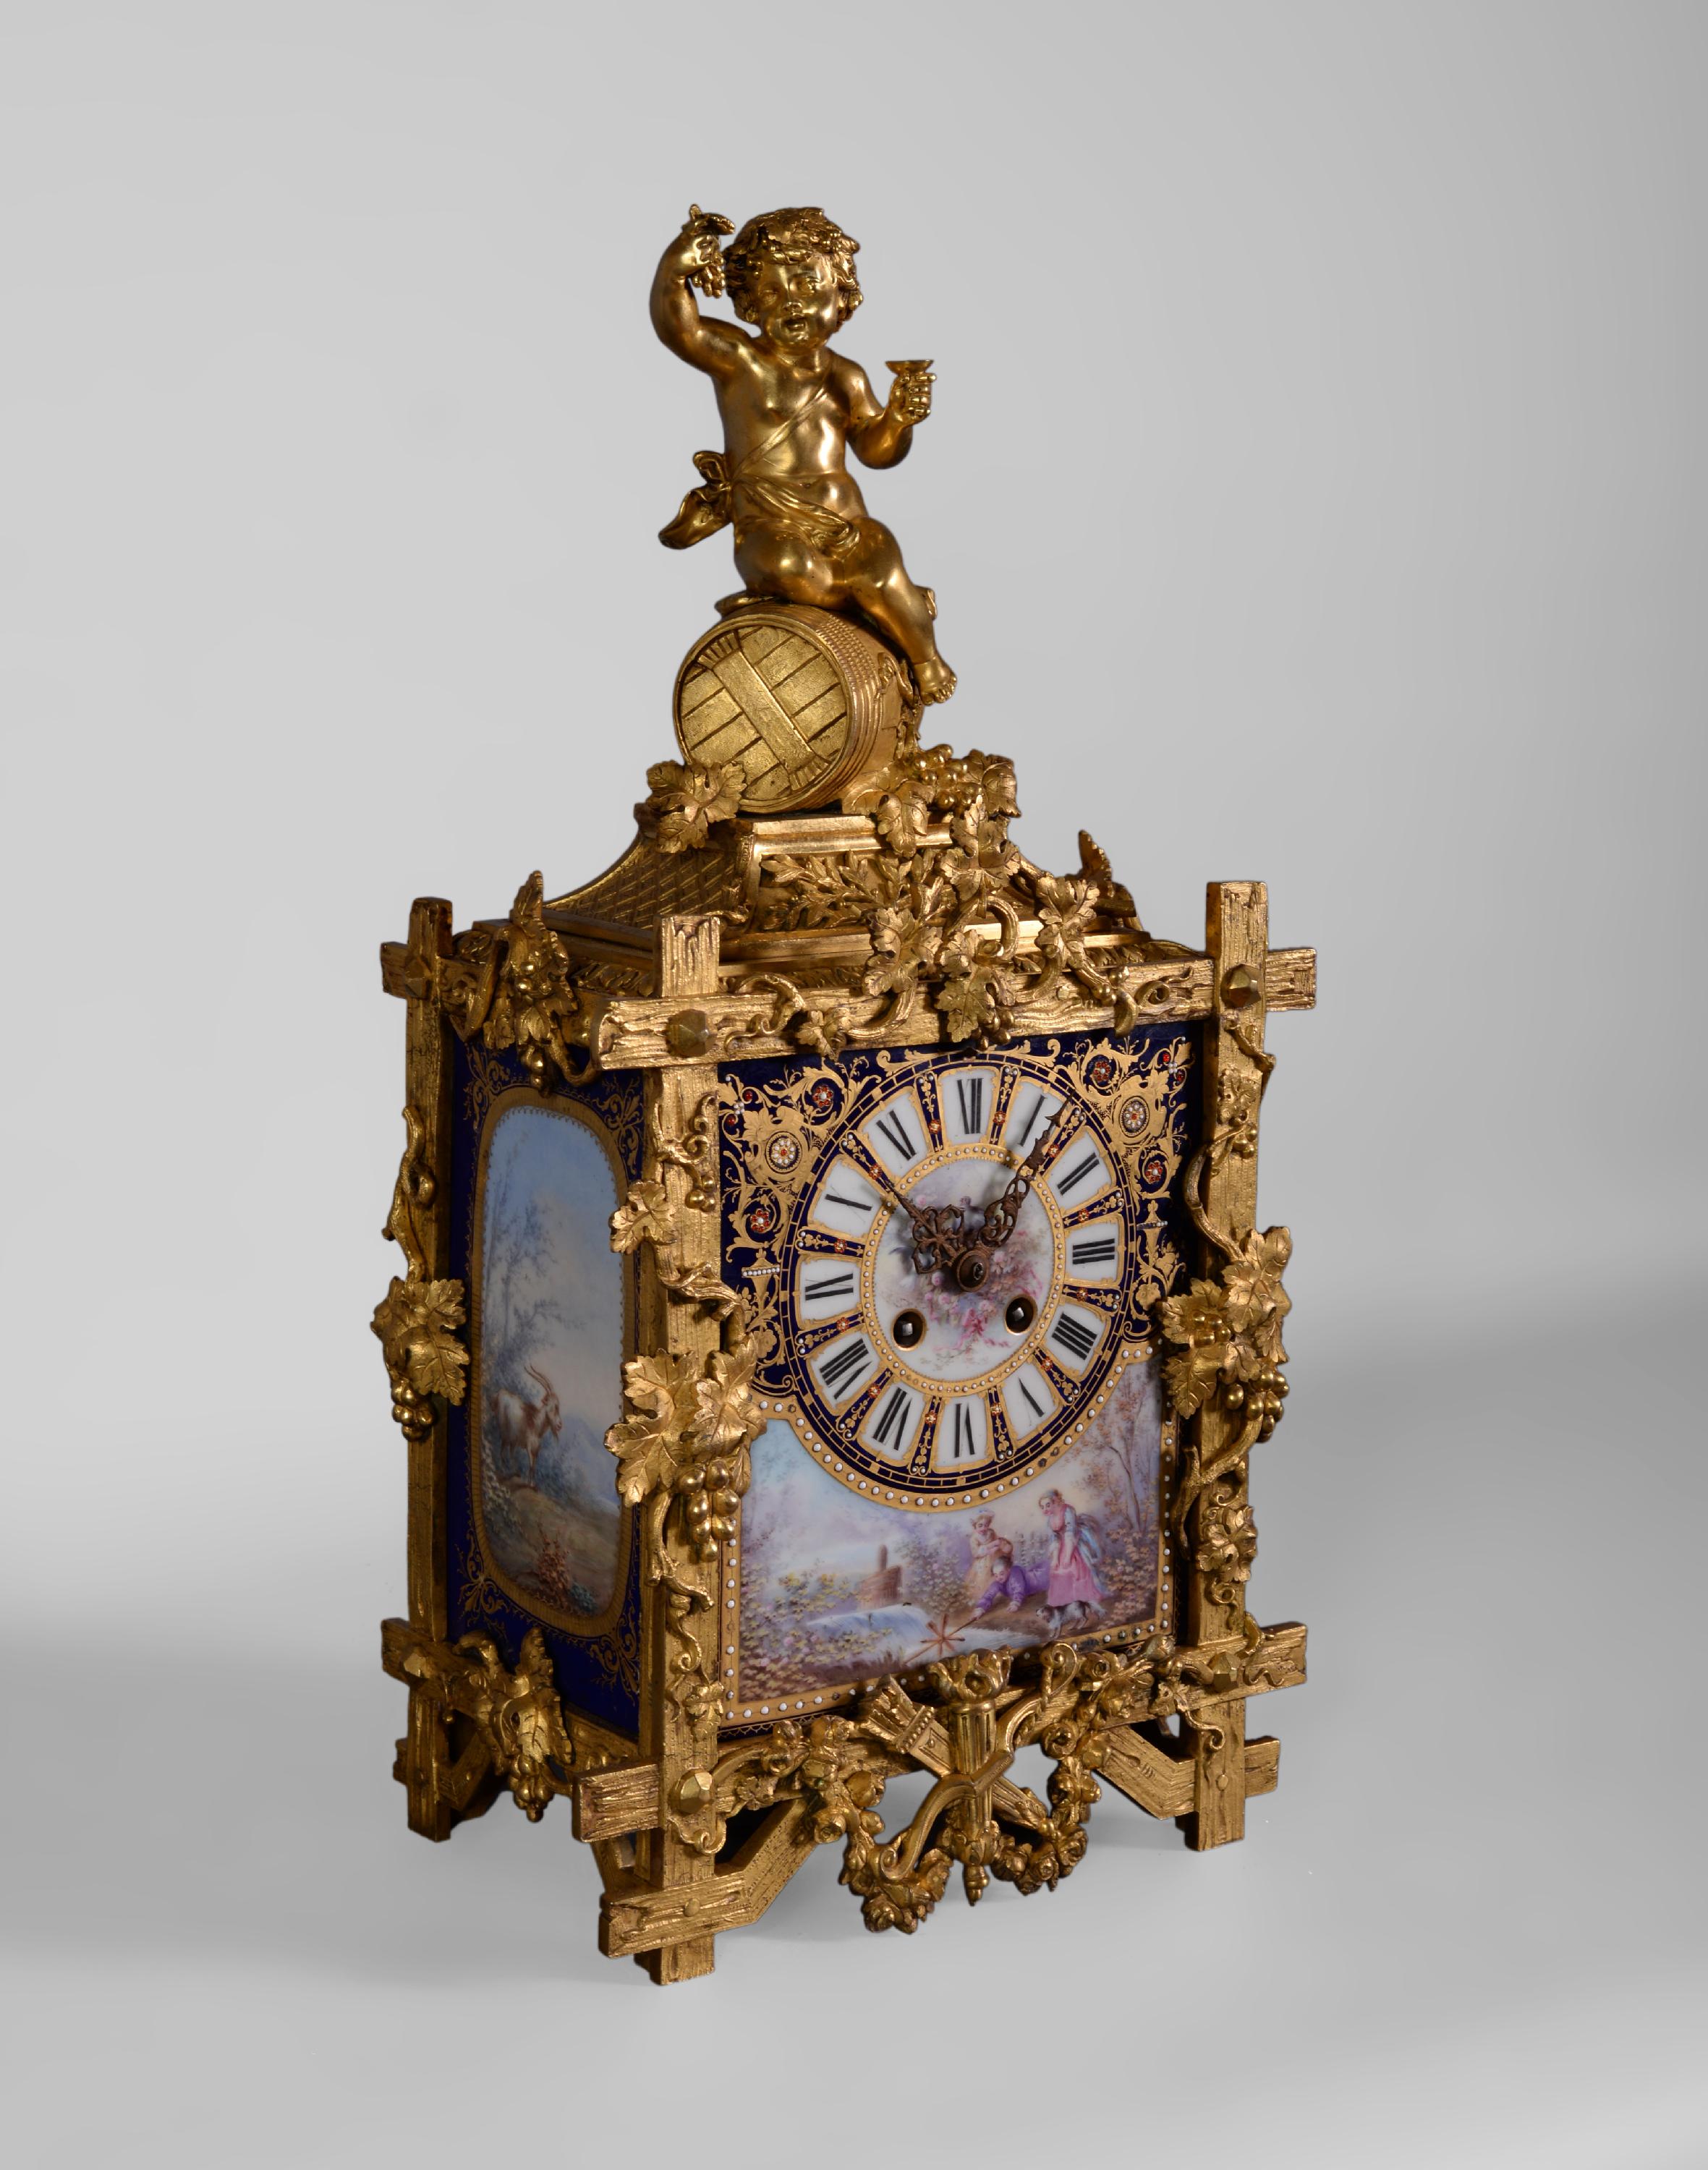 Cette belle horloge a été fabriquée en porcelaine et en bronze doré pendant la période de Napoléon III. Le cadran en porcelaine indique les heures avec des chiffres romains. Il est décoré de rinceaux dorés et de petites perles émaillées. Sous le